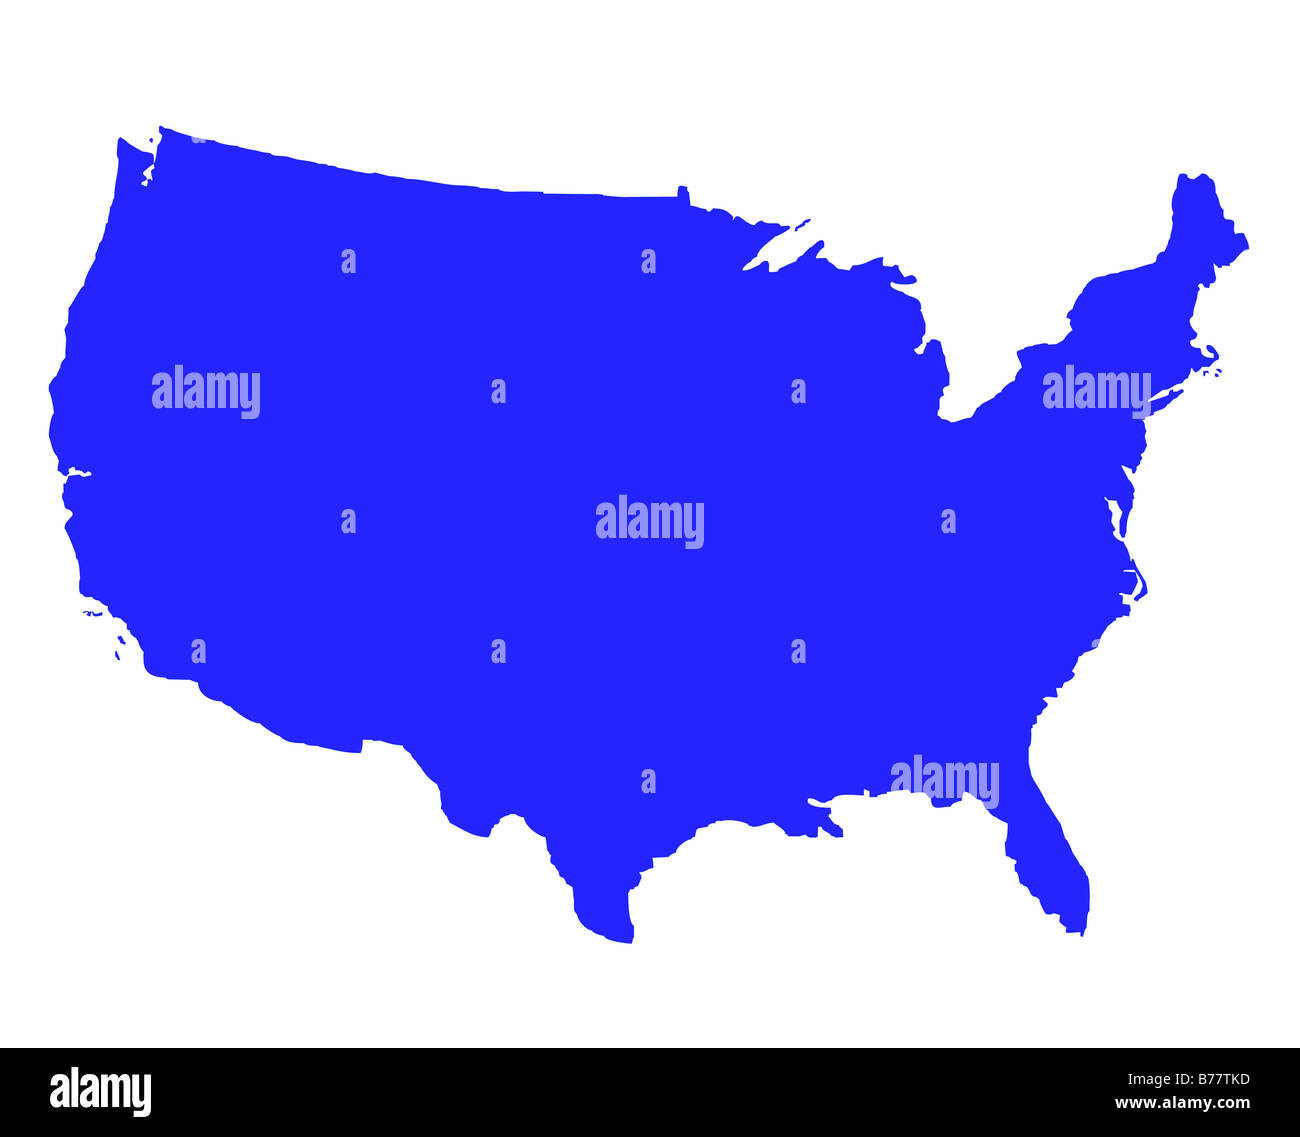 Etats-unis d'Amérique carte contour en bleu isolé sur fond blanc Banque D'Images